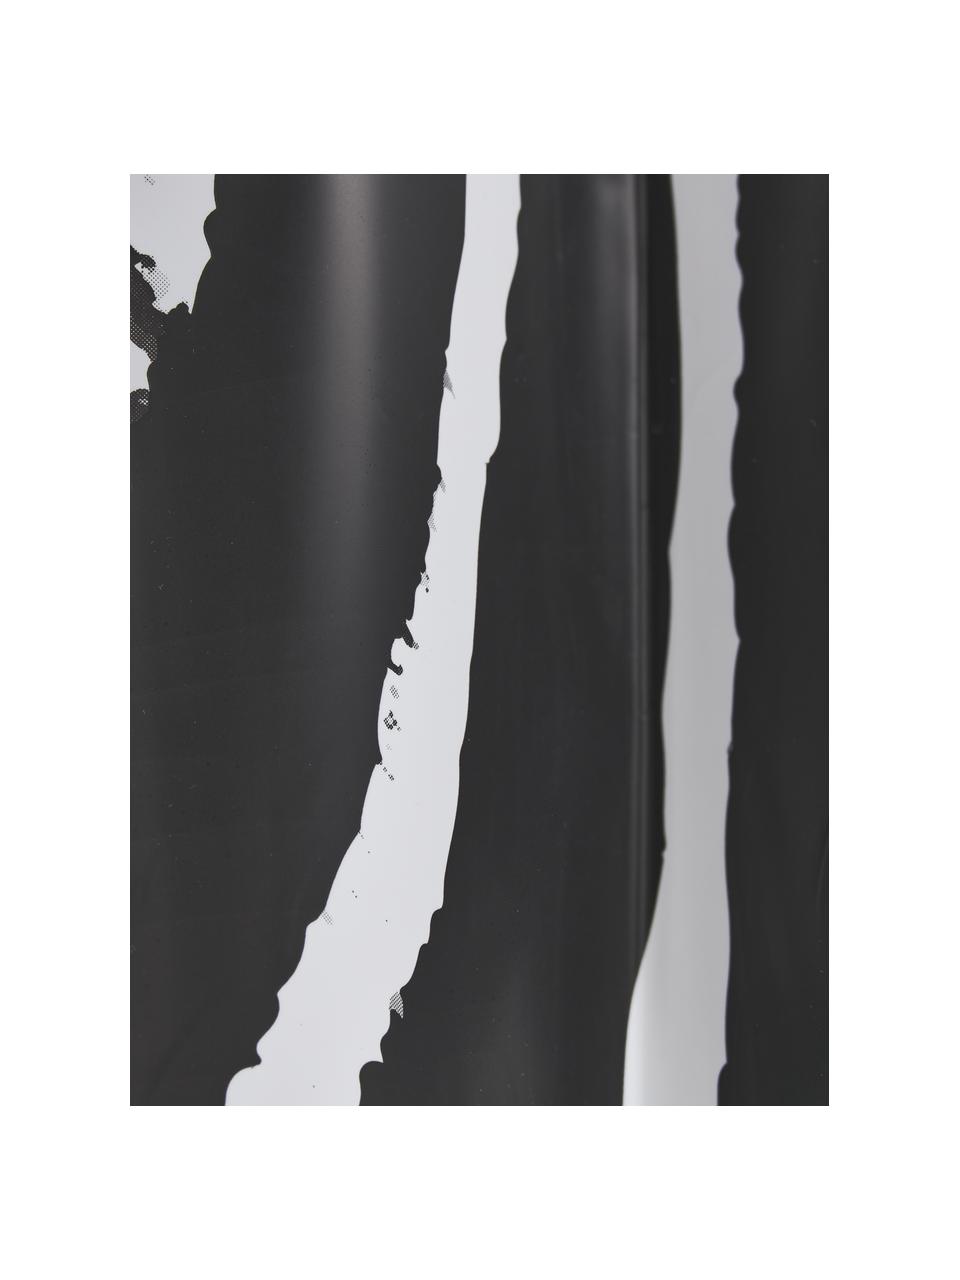 Rideau de douche Zebra, 100 % plastique (PEVA), Noir, blanc, larg. 180 x long. 200 cm